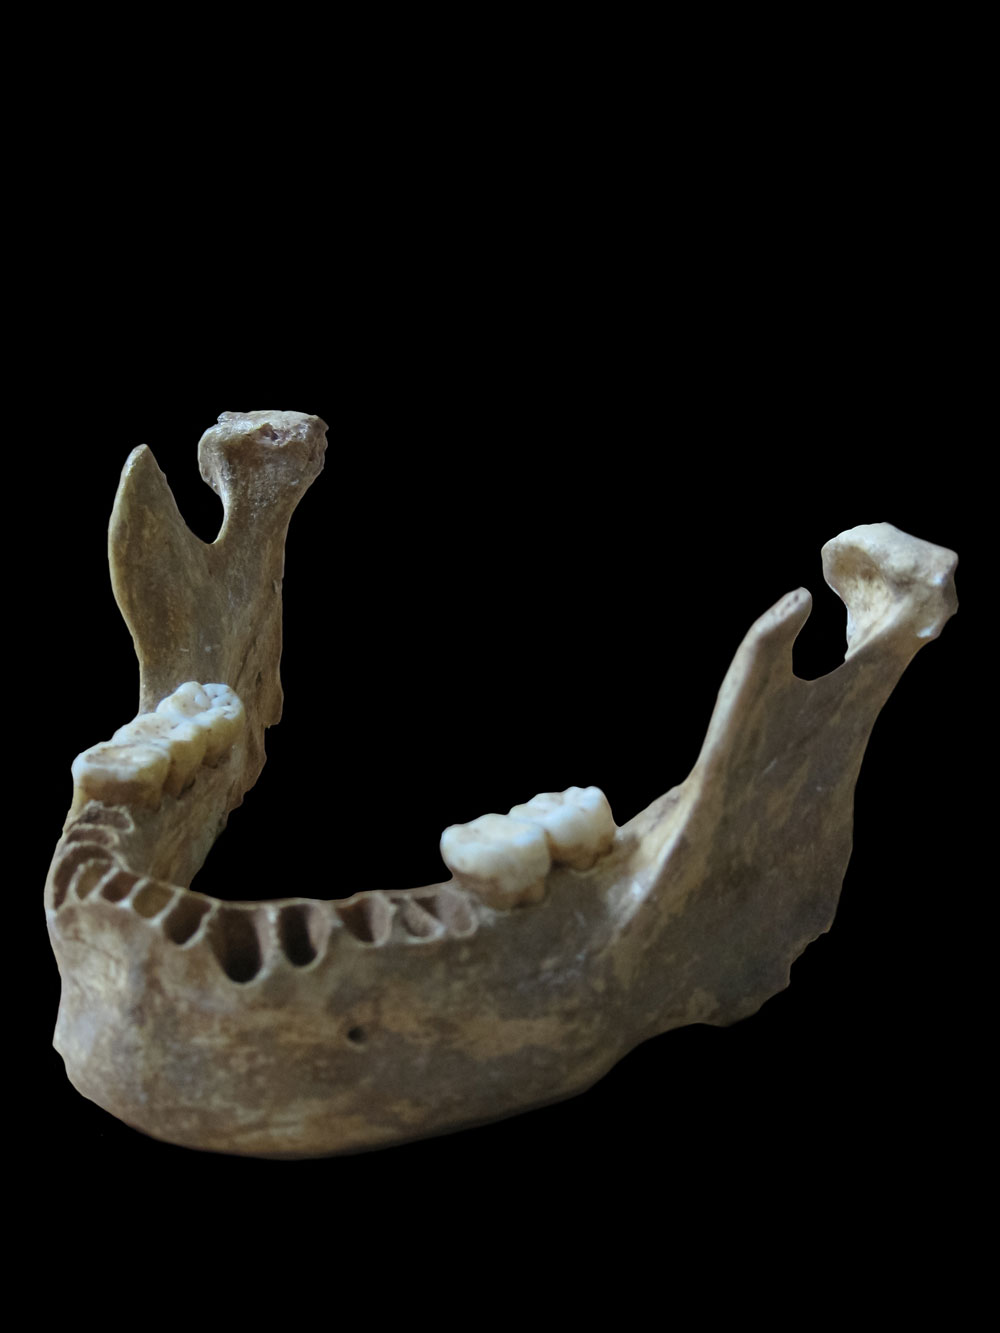 4～6世代前にネアンデルタール人の祖先がいたことが判明した、約4万年前の現生人類の下顎骨。